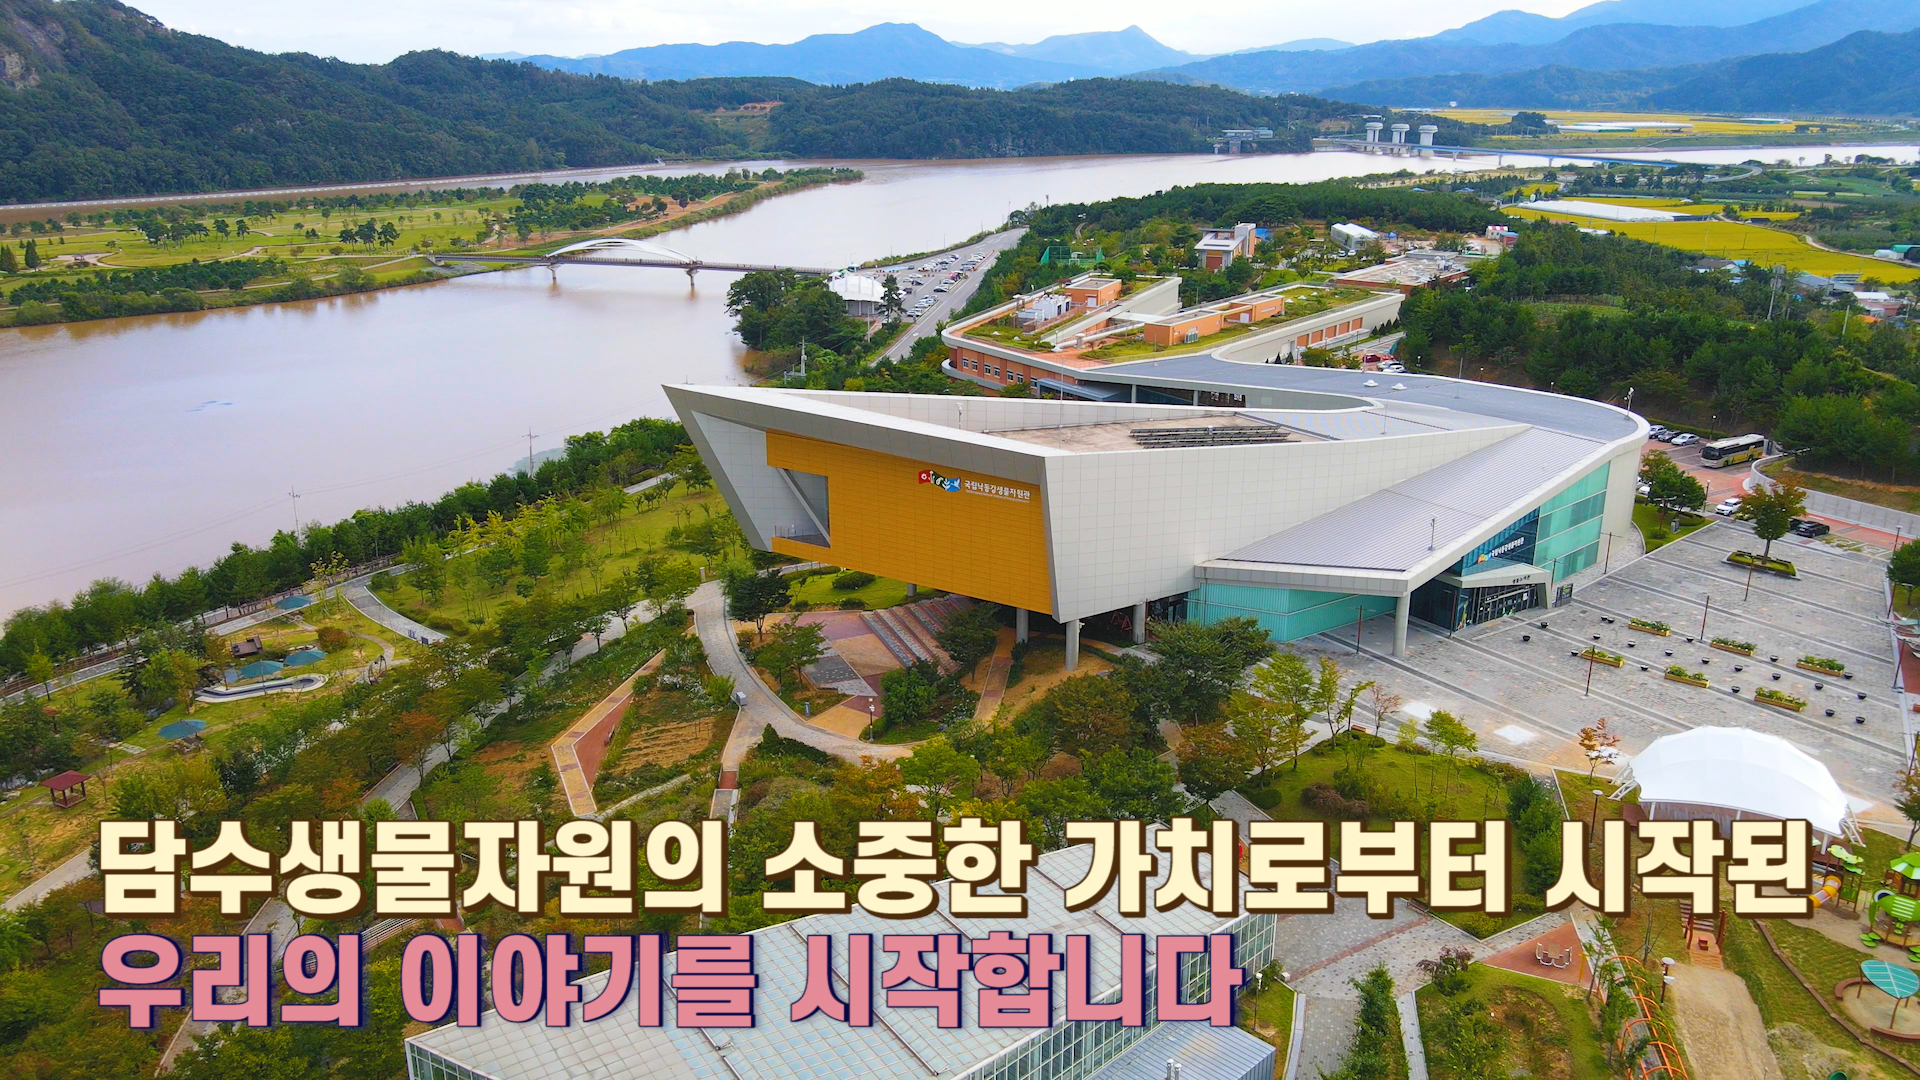 2021 국립낙동강생물자원관 홍보영상 (국문)